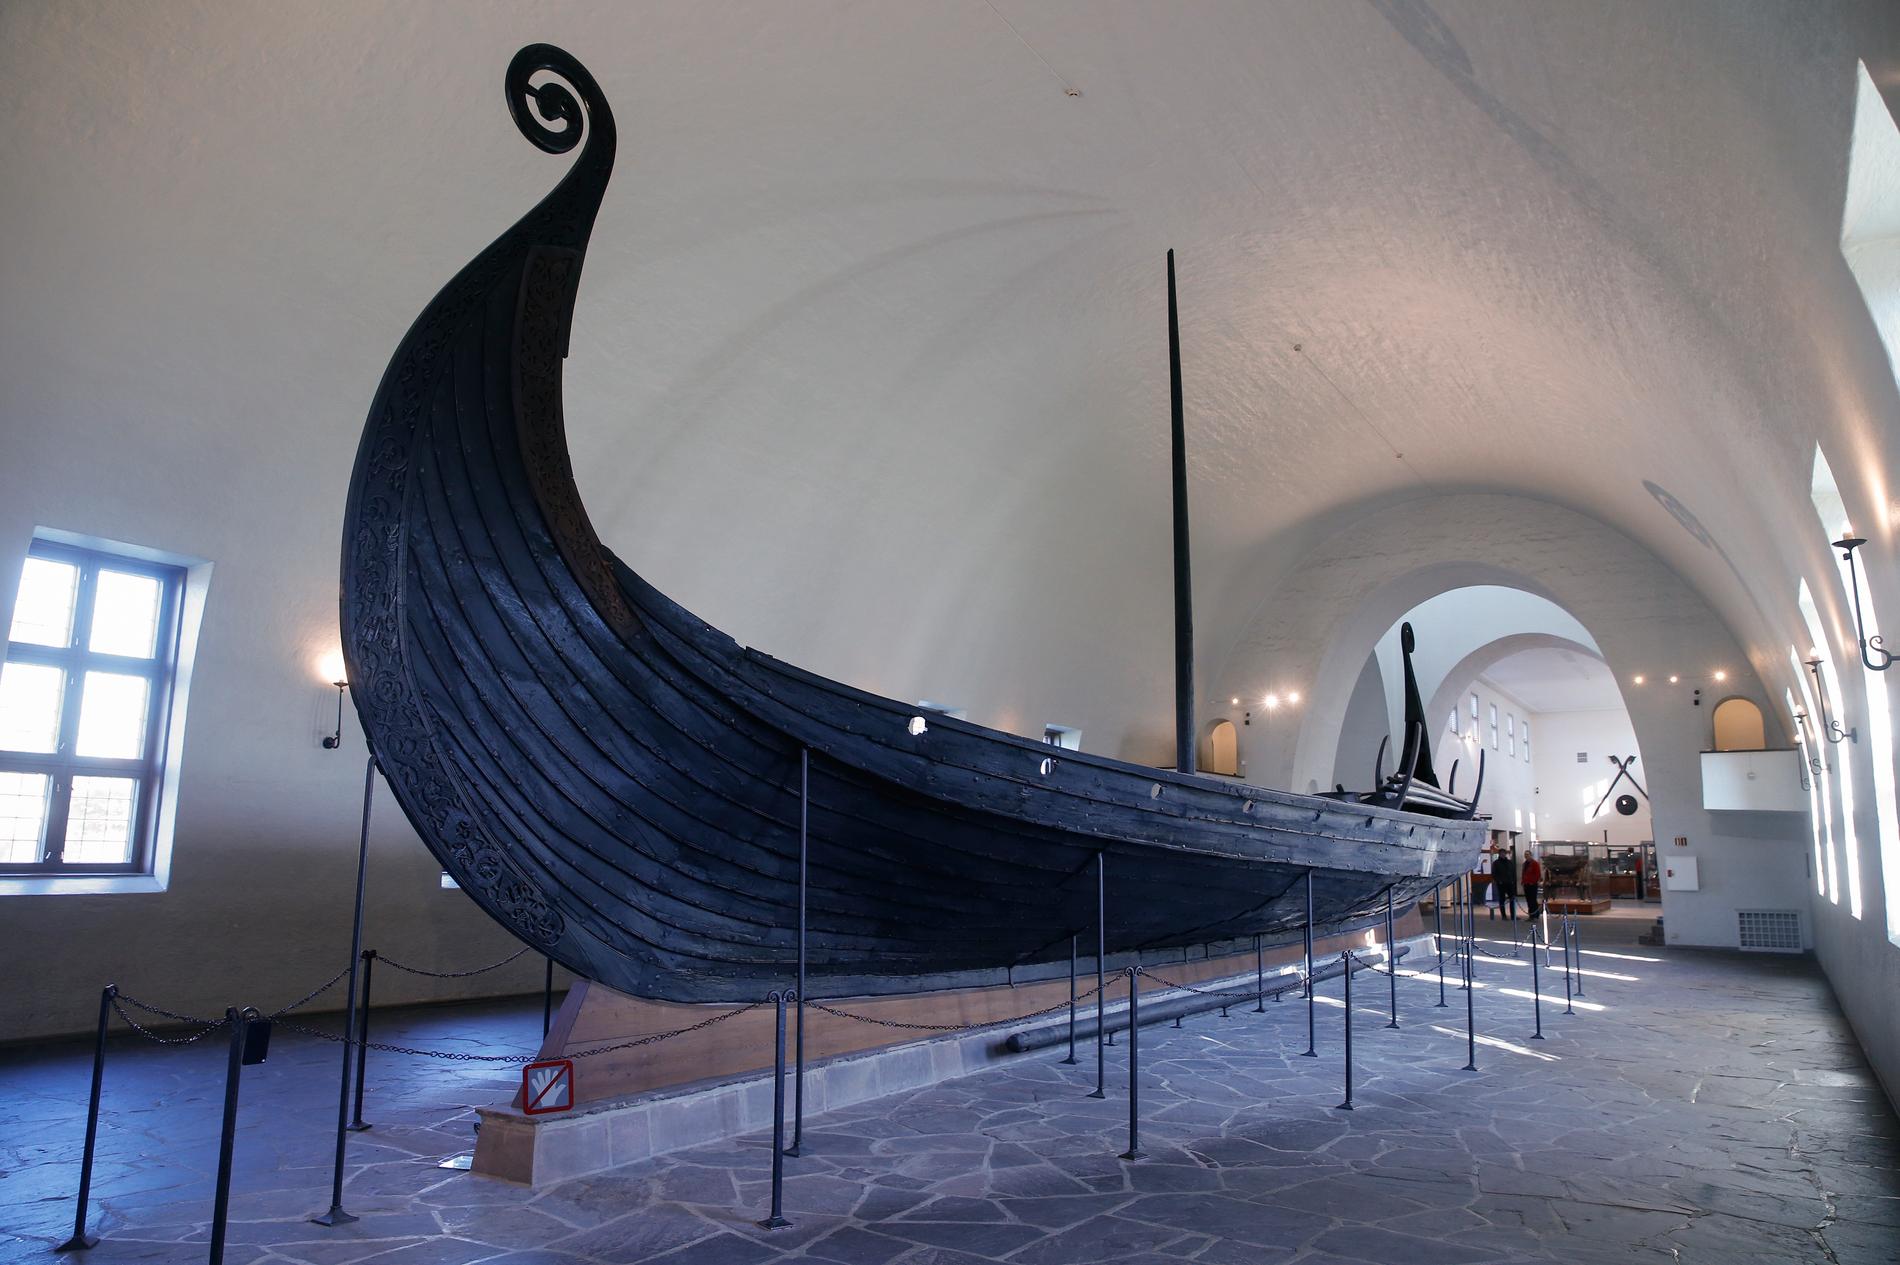 Vikingaskeppen som finns bevarade i Norge riskerar att falla sönder, enligt förvaltaren. Arkivbild.